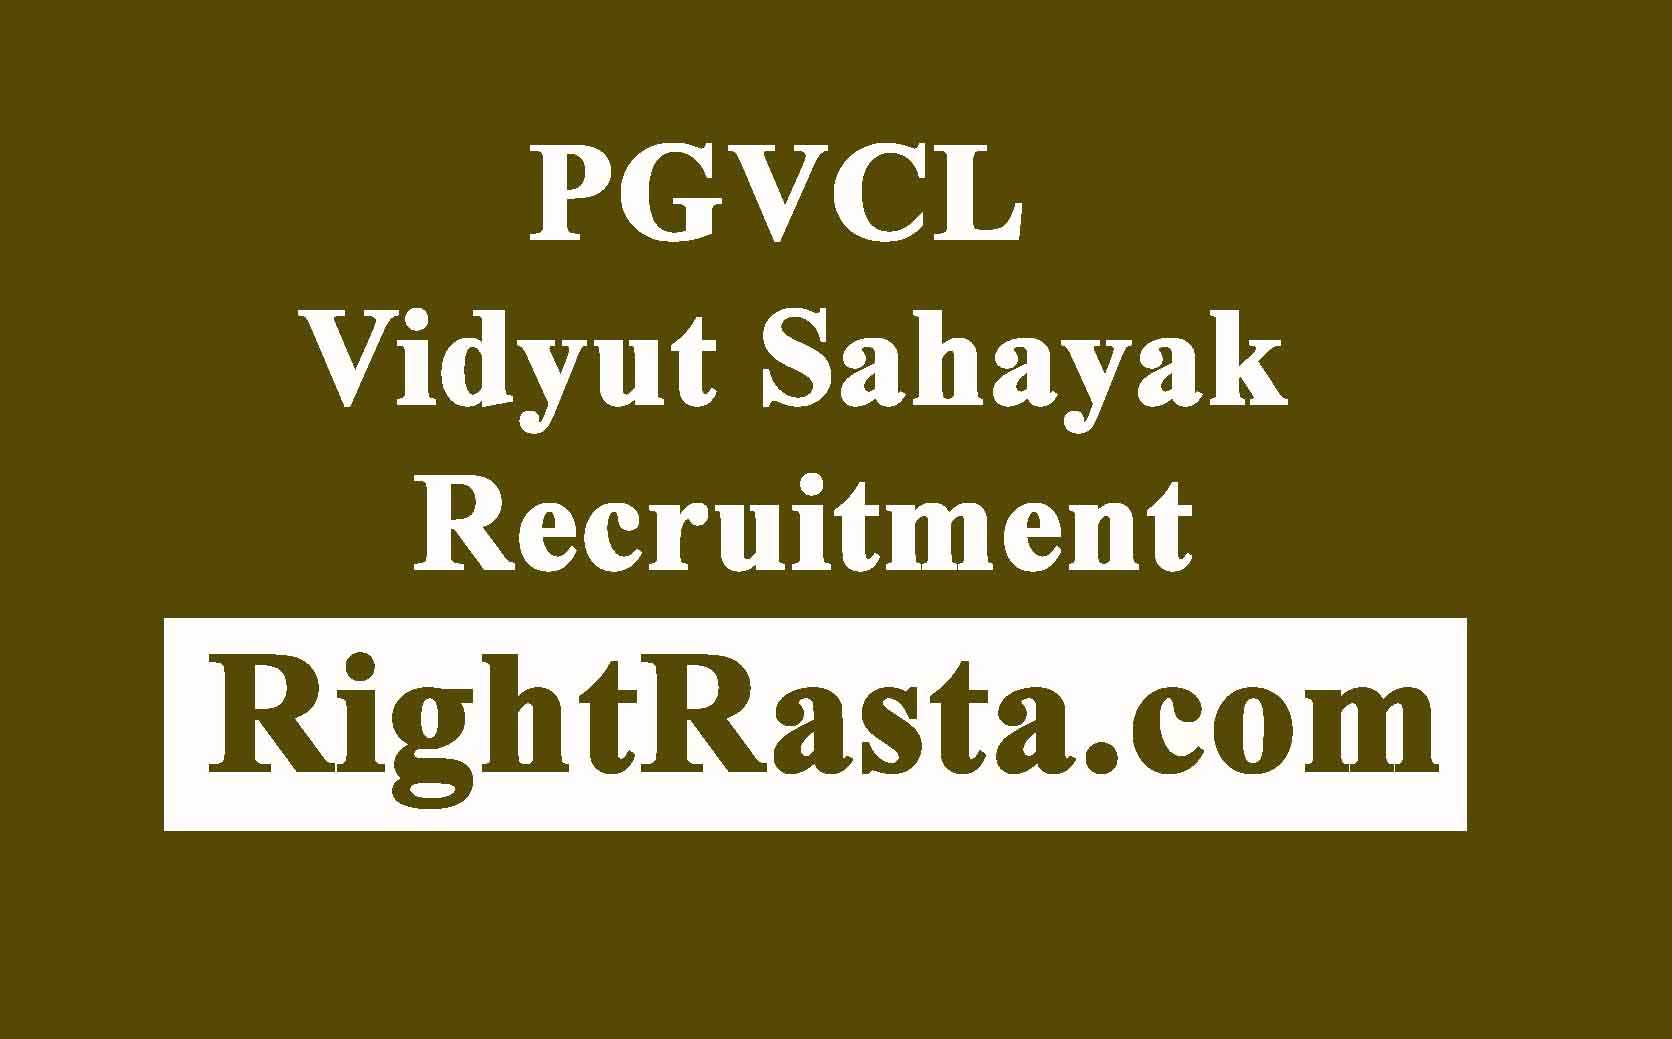 PGVCL Vidyut Sahayak Recruitment 2018